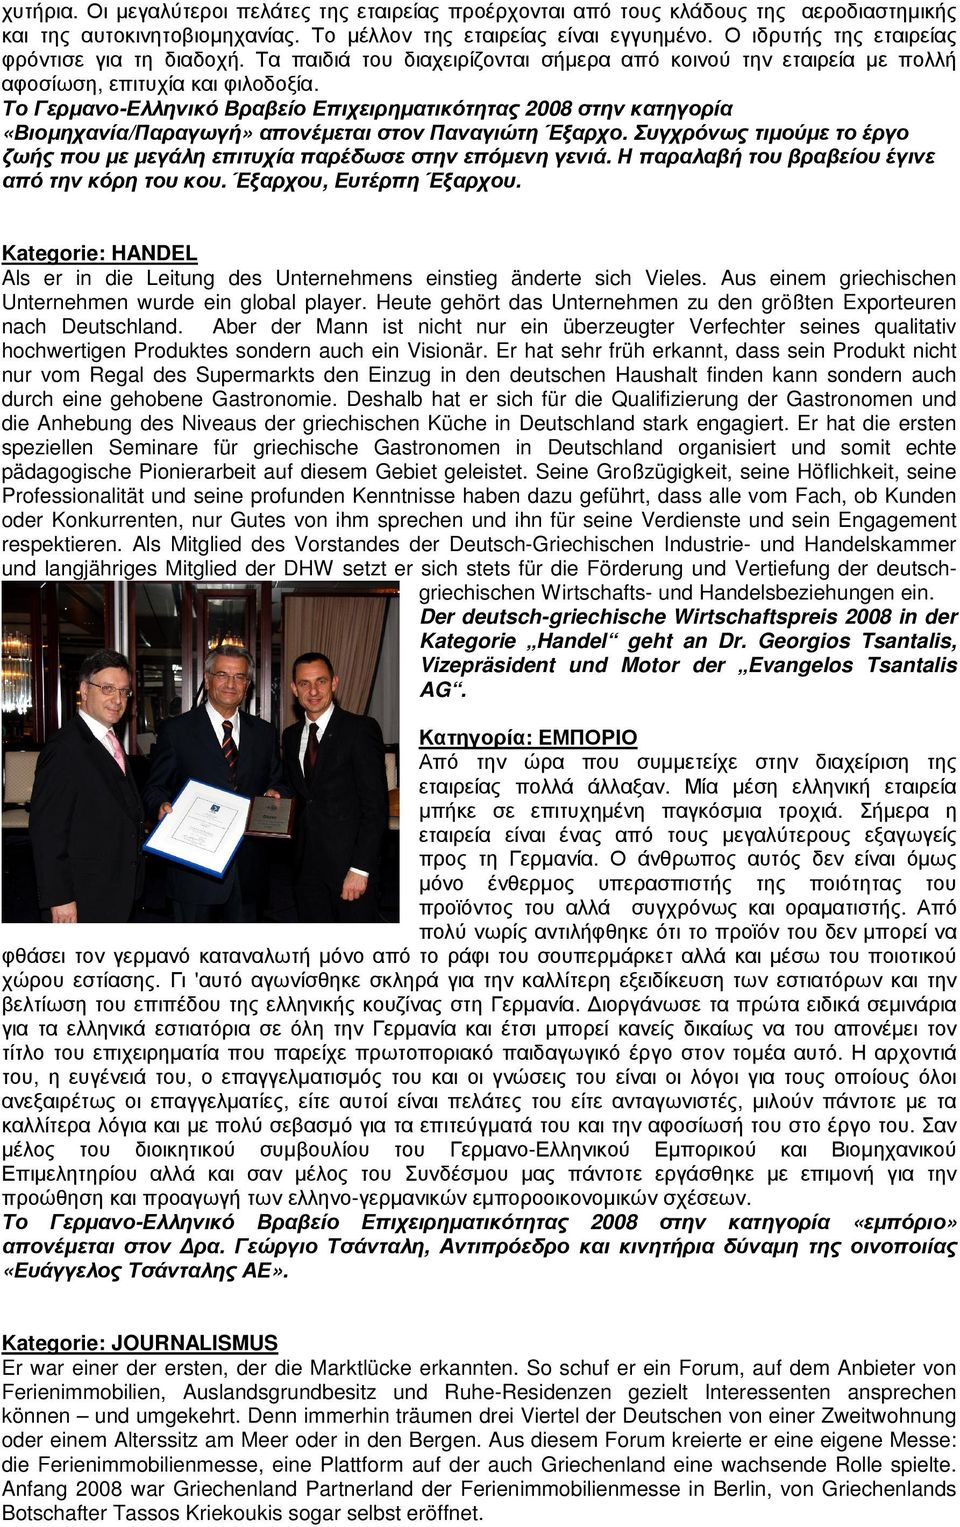 Το Γερµανο-Ελληνικό Βραβείο Επιχειρηµατικότητας 2008 στην κατηγορία «Βιοµηχανία/Παραγωγή» απονέµεται στον Παναγιώτη Έξαρχο.